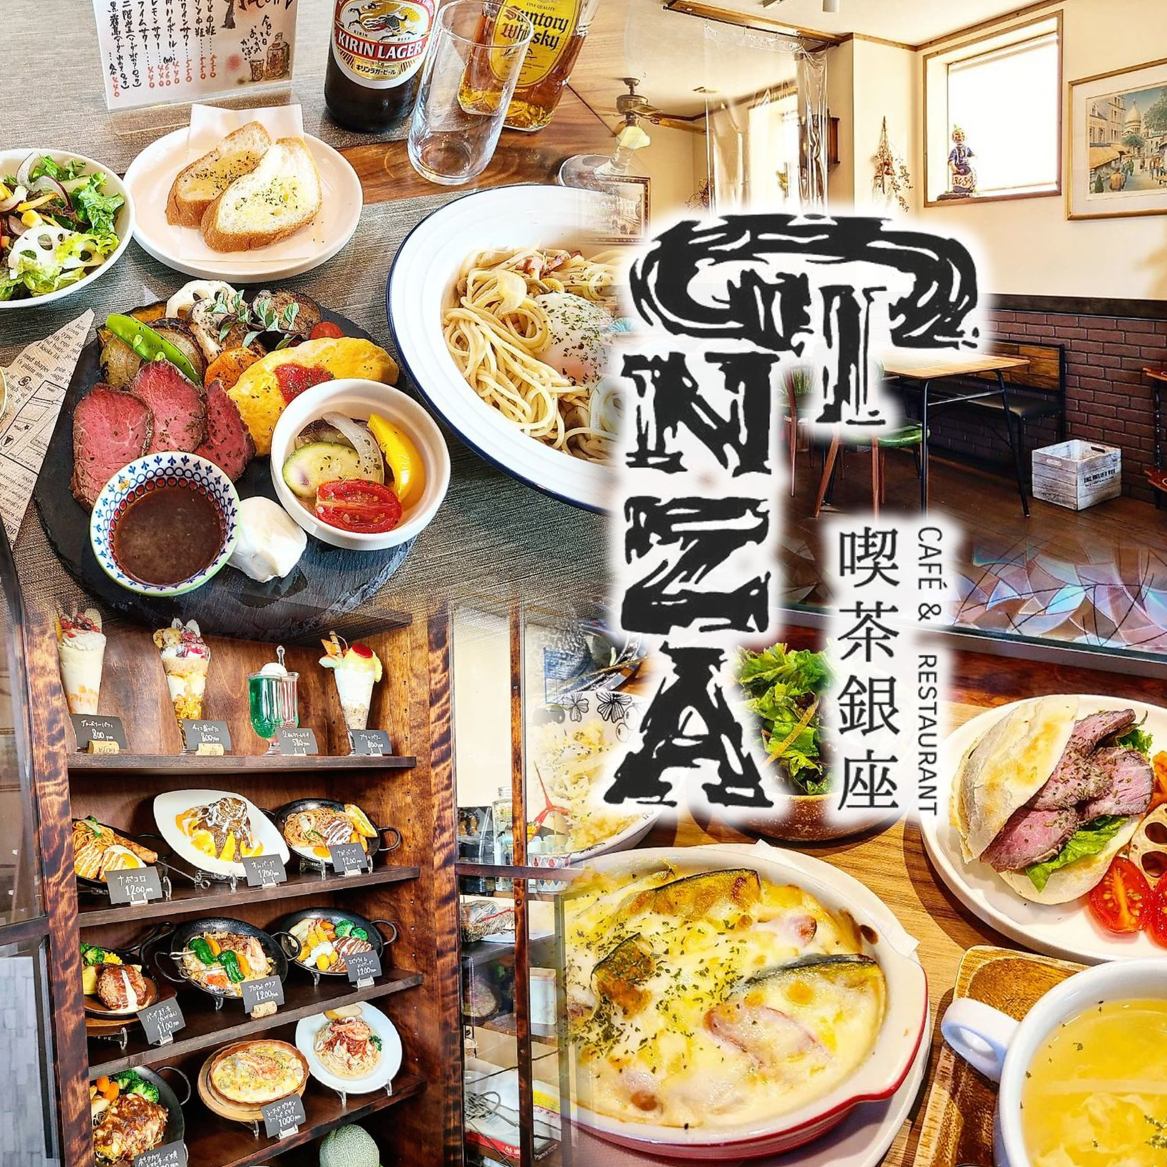 창업 1968년 ◇옛부터 변함없는 맛♪지역의 손님에게 사랑받는 양식 레스토랑 "카페 GINZA"